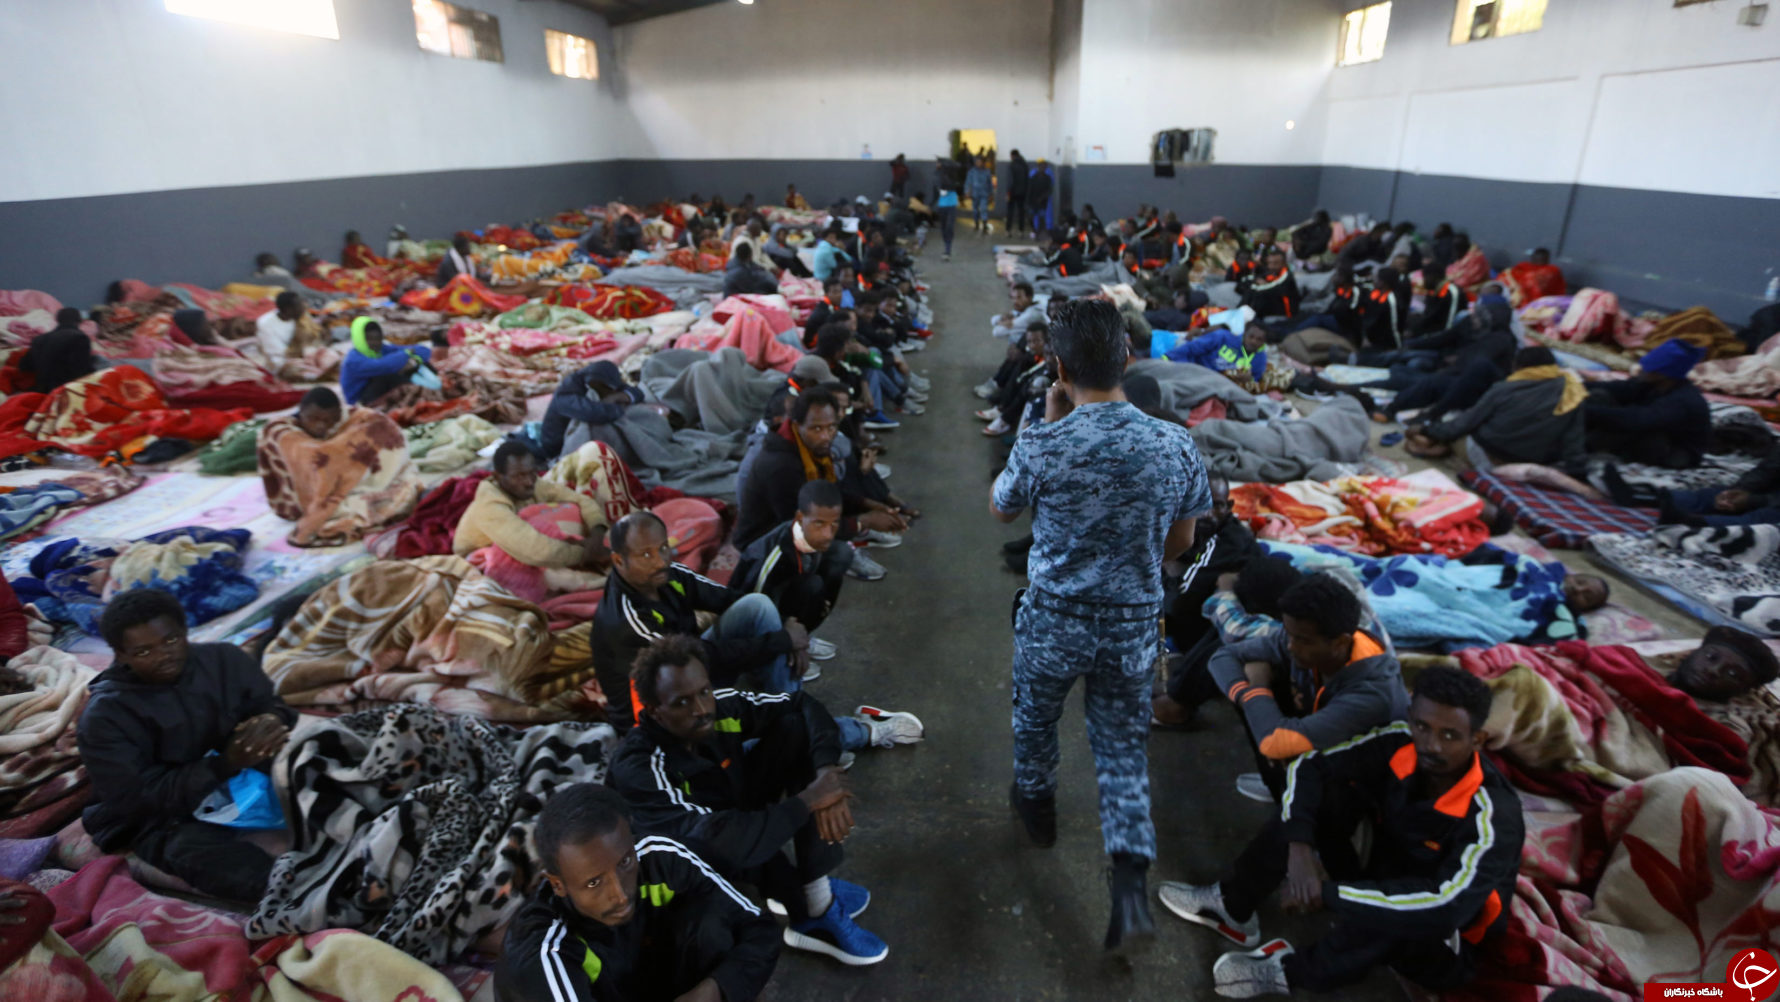 پشت پرده شبکه پیچیده و مخوف کشتار و شکنجه مهاجران لیبی